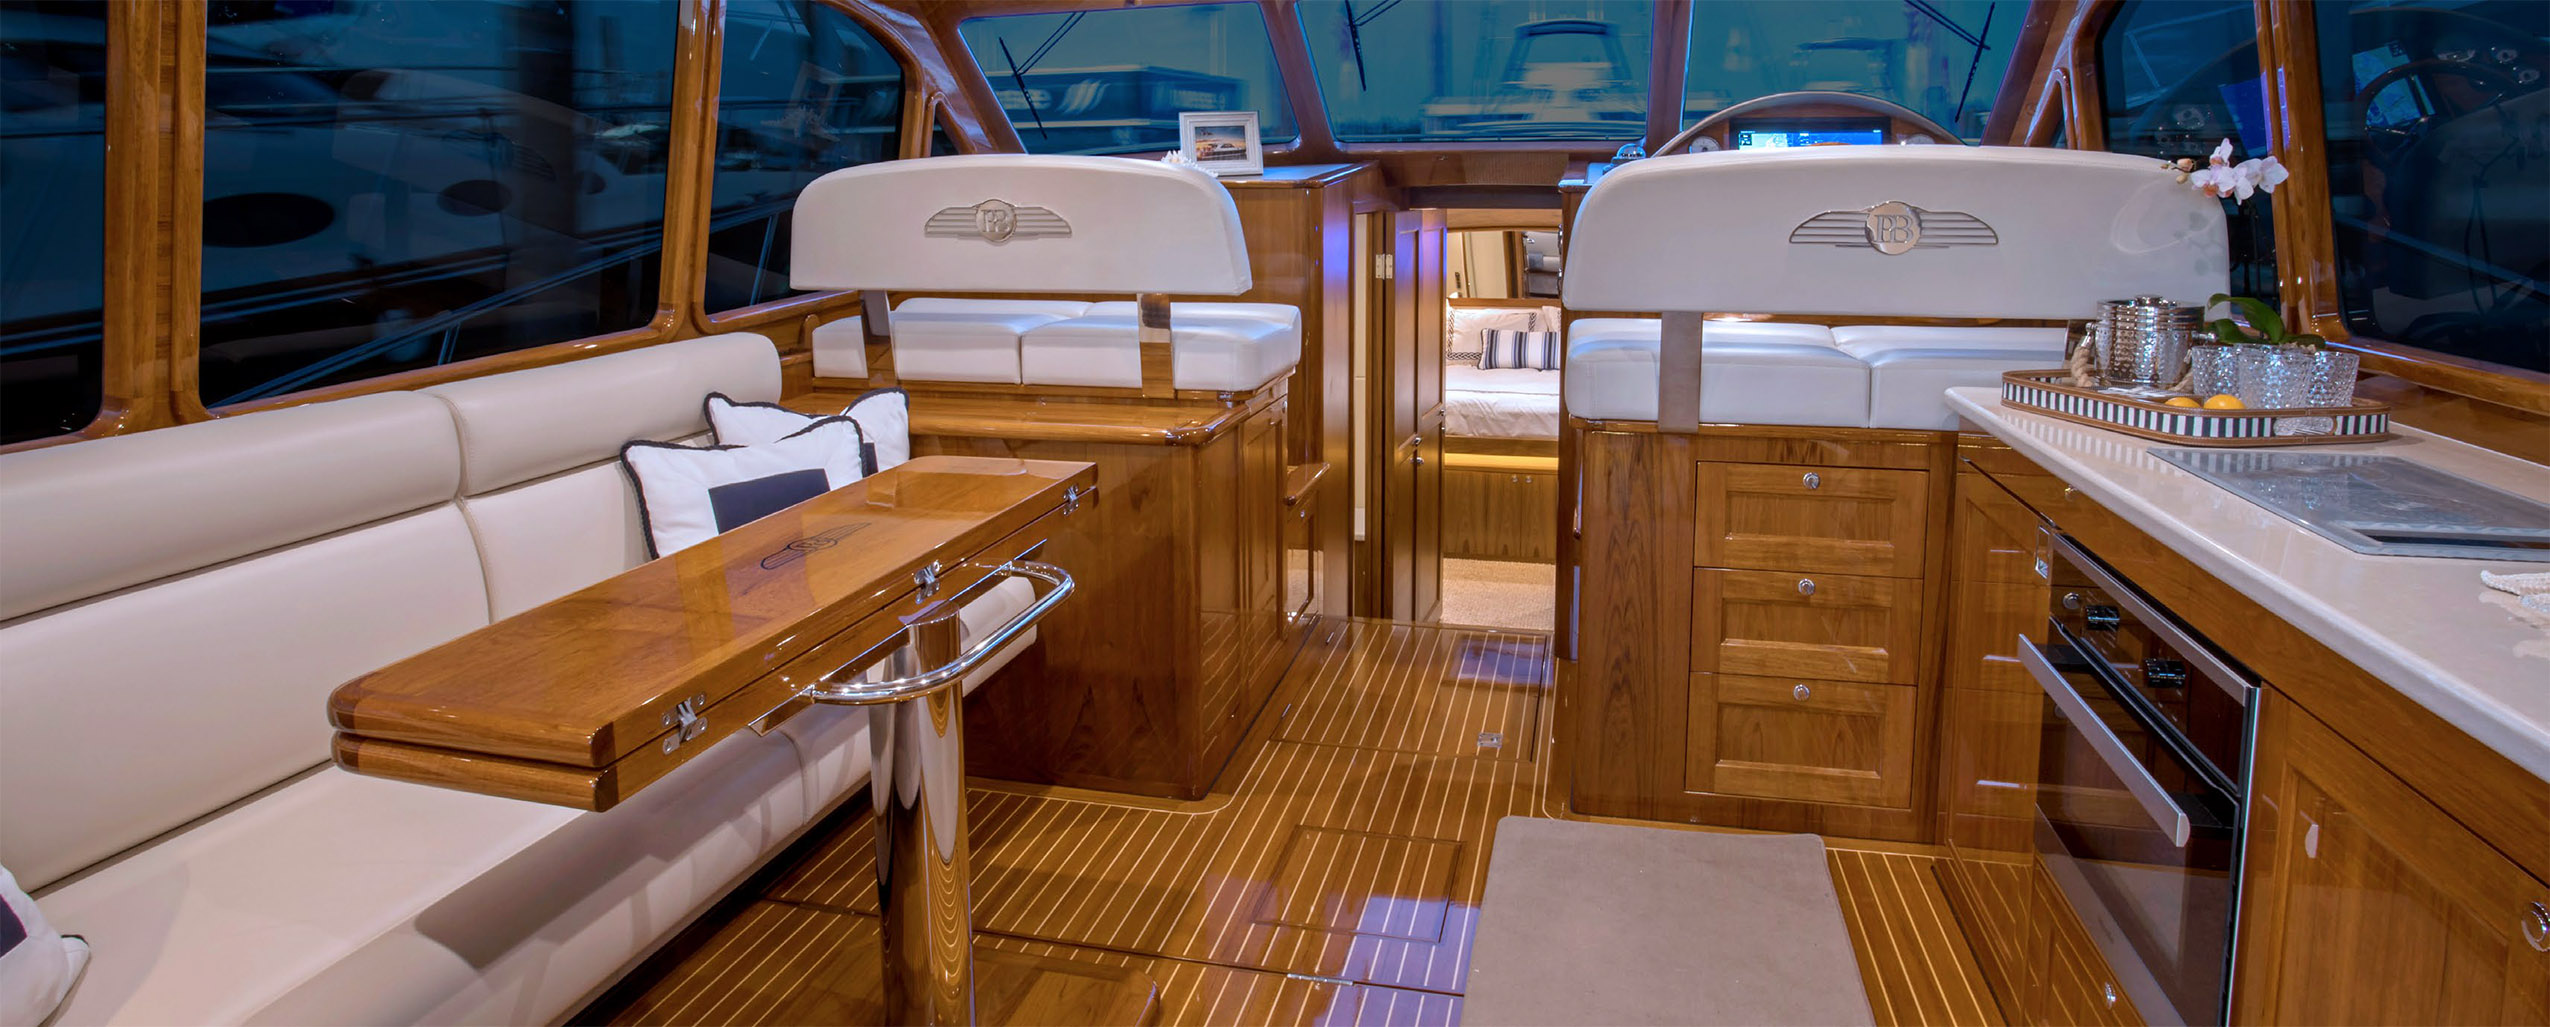 45 foot motor yachts